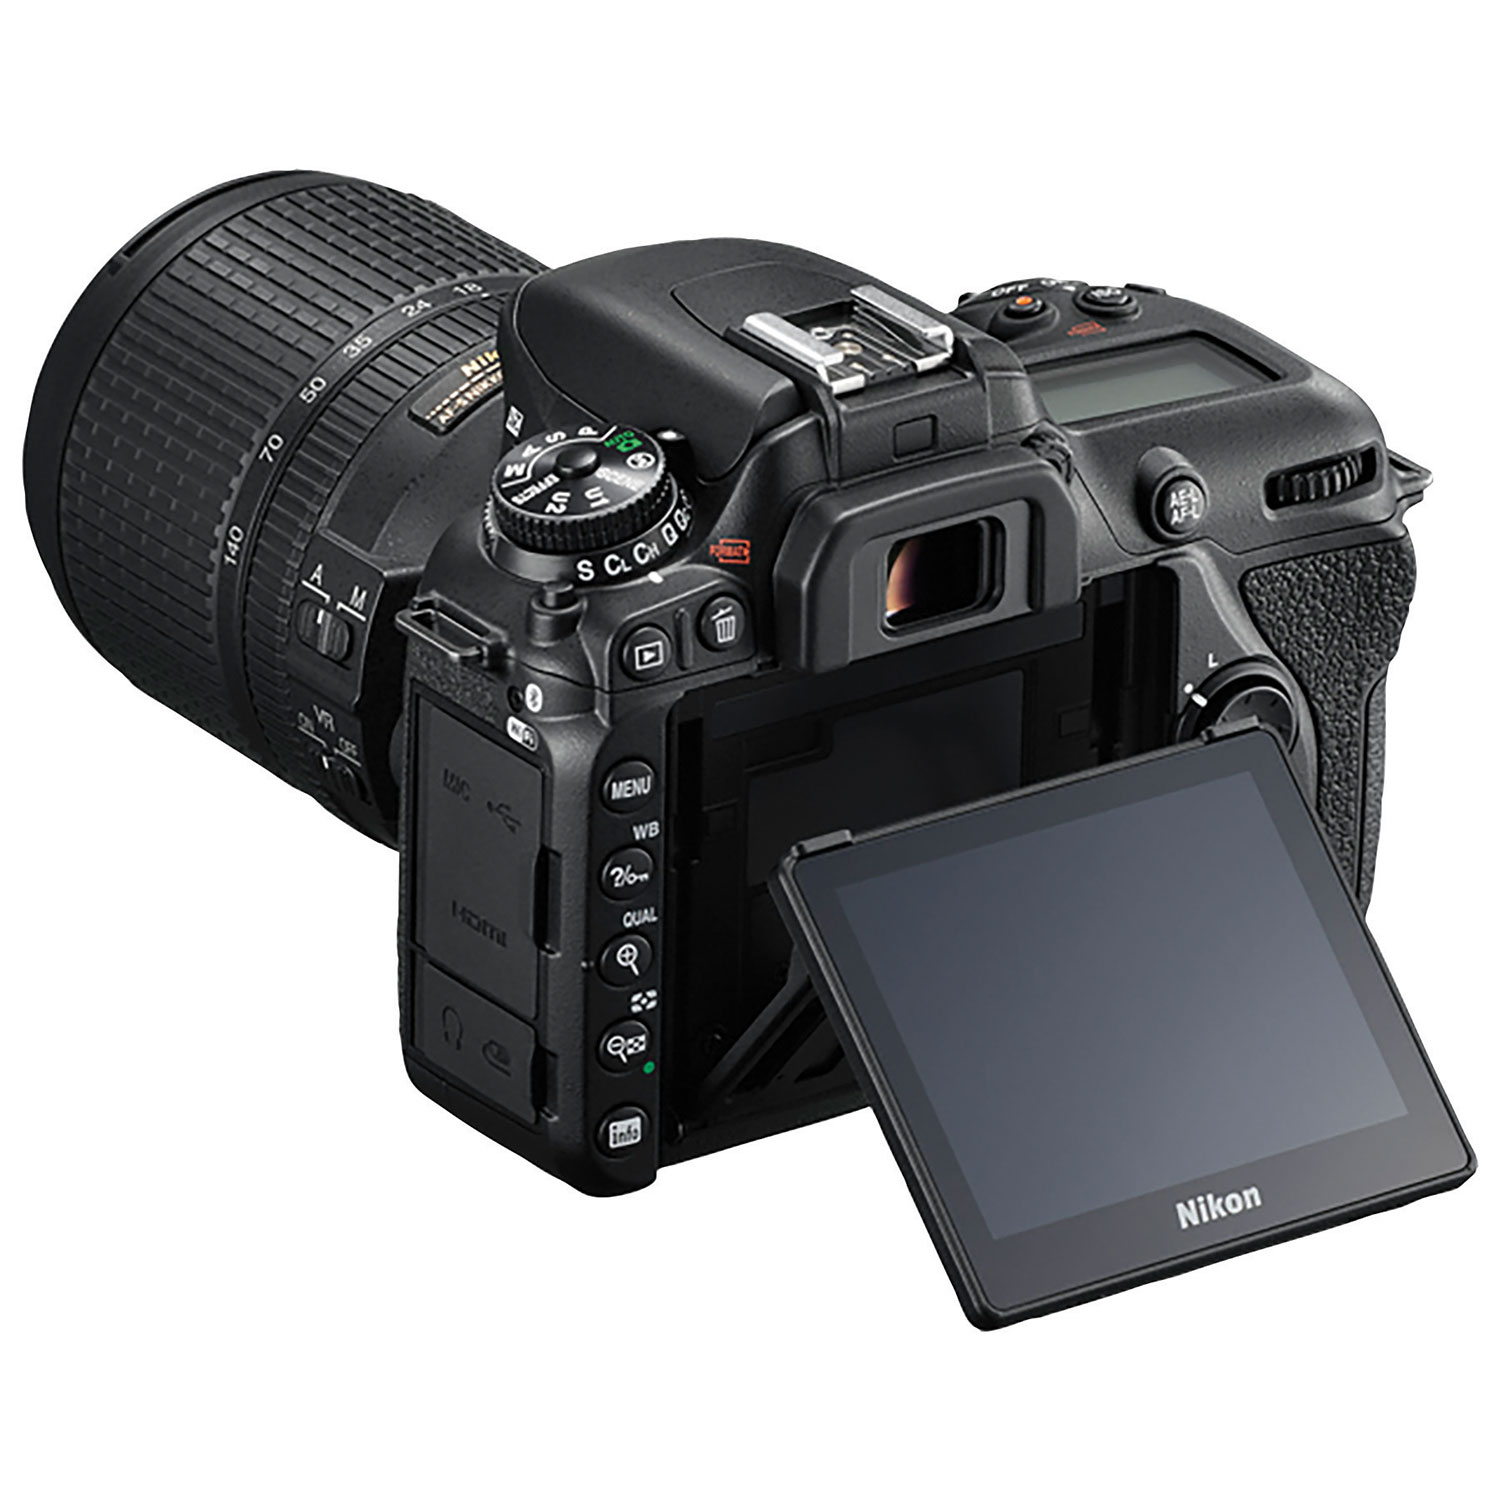 NIKON D7500 DSLR Camera with 18-140mm ED VR Lens Kit